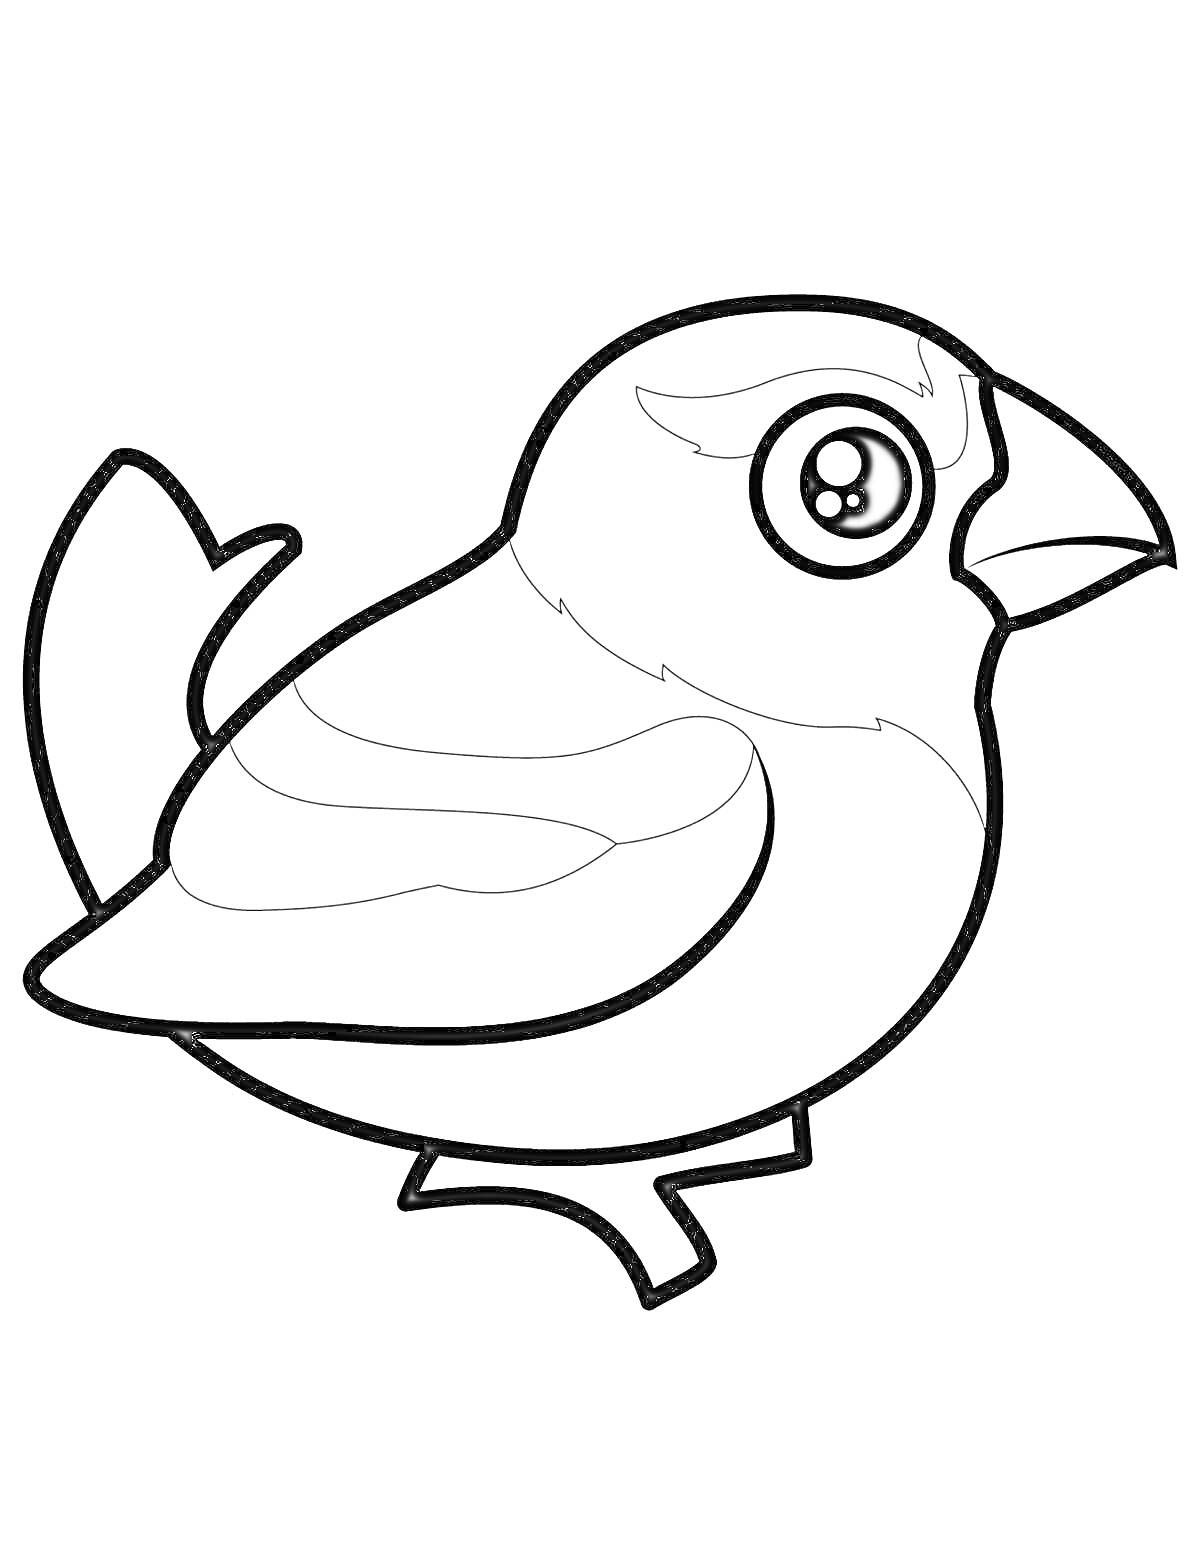 Раскраска Птичка с большим глазом и выделенными крыльями на ветке